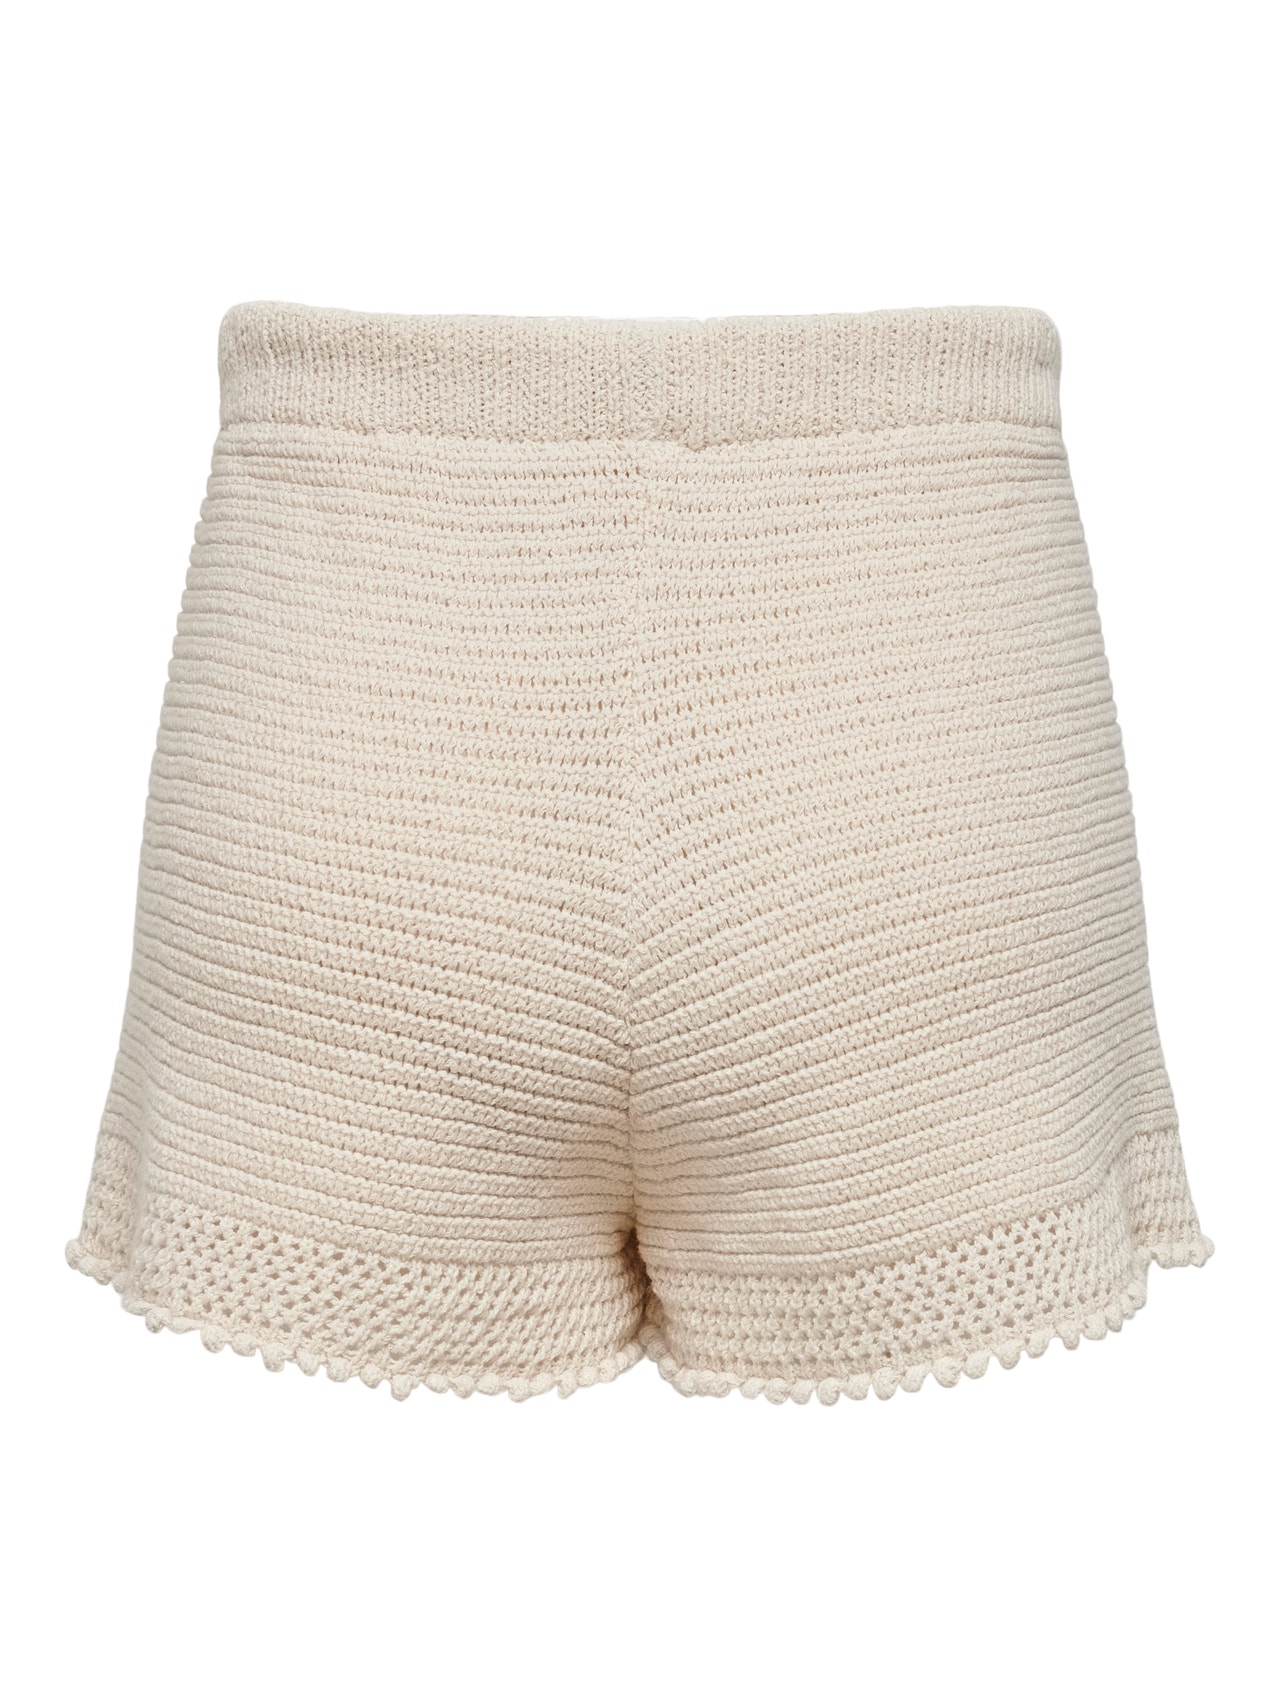 ONLY Crochet Shorts -Ecru - 15256565